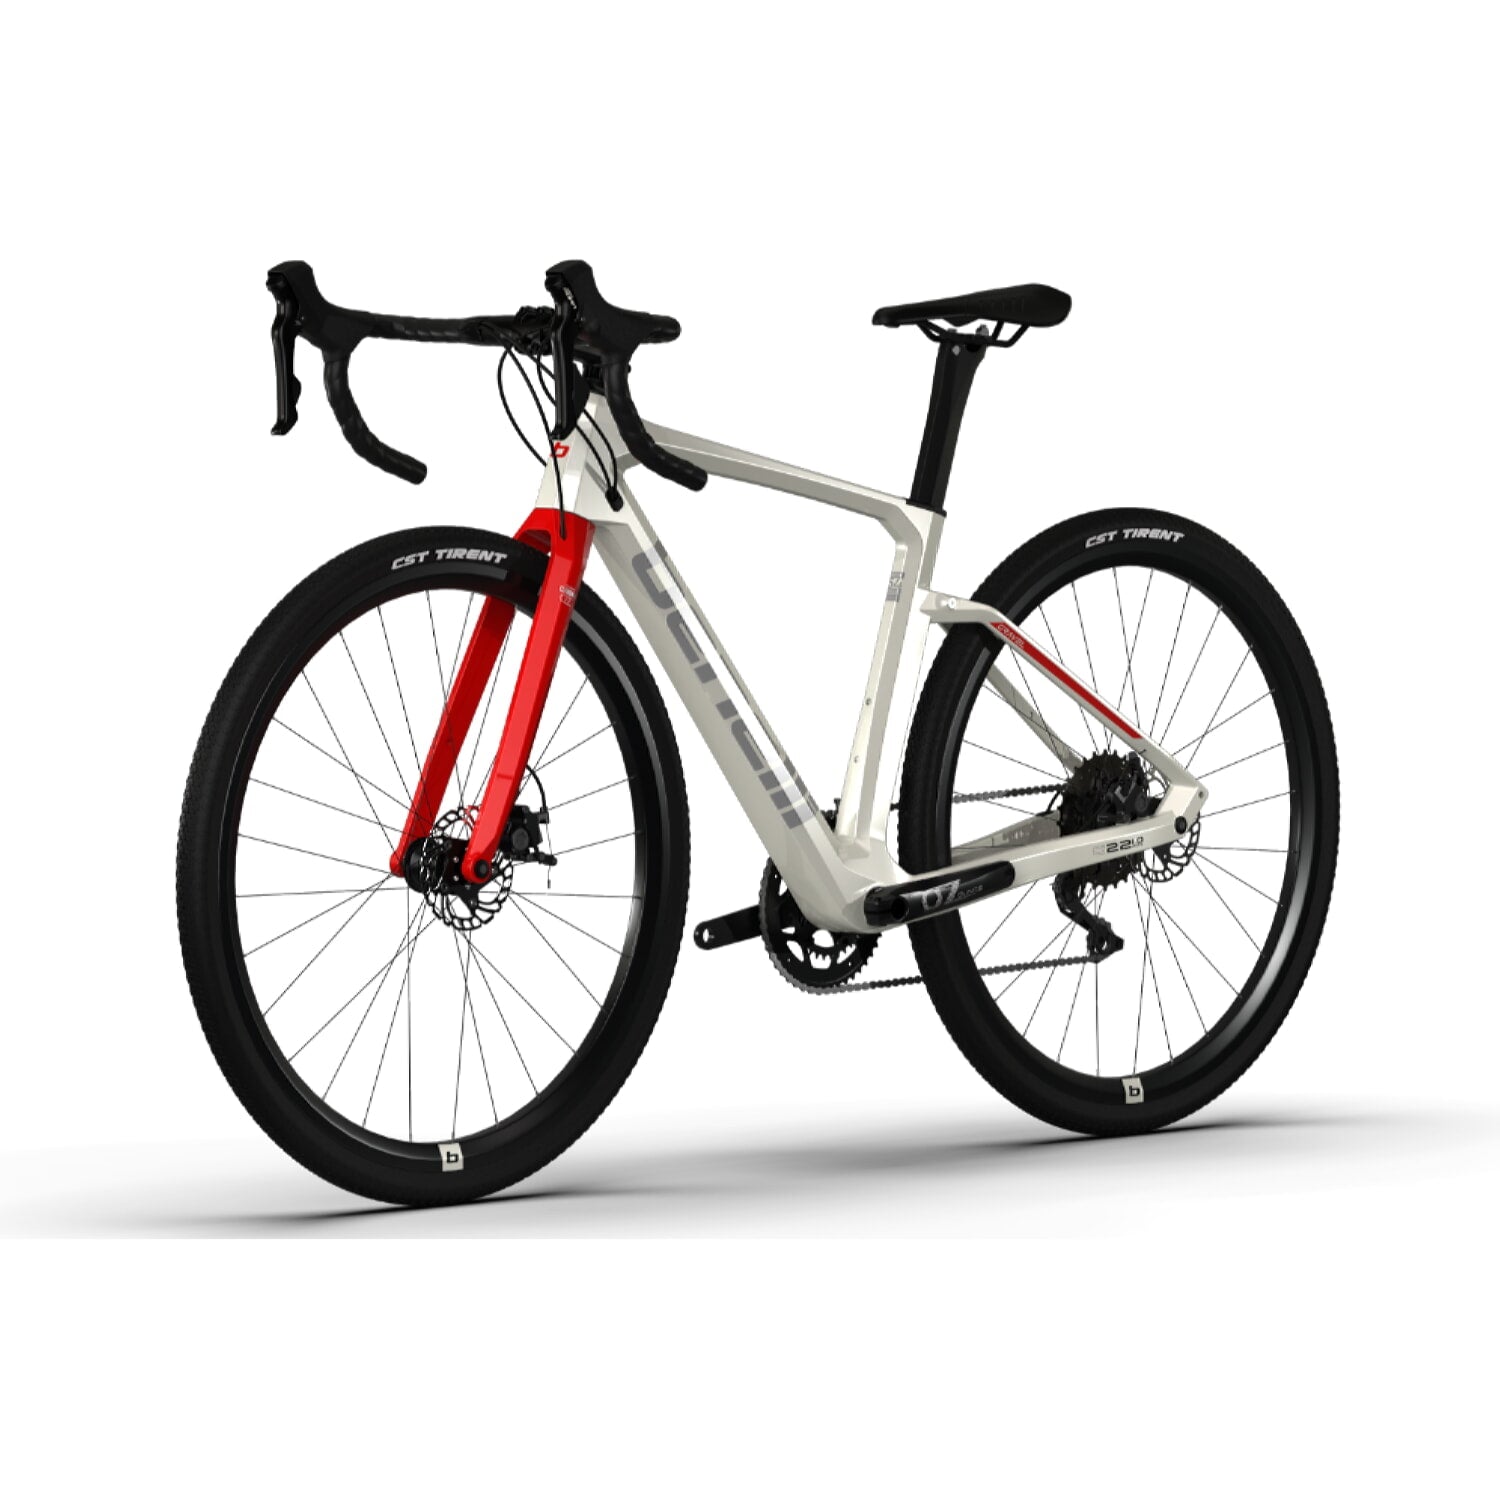 Bicicleta Gravel Benelli Carb. (G22 1.0 Adv Carb) Color Blanco/Plata Talla L